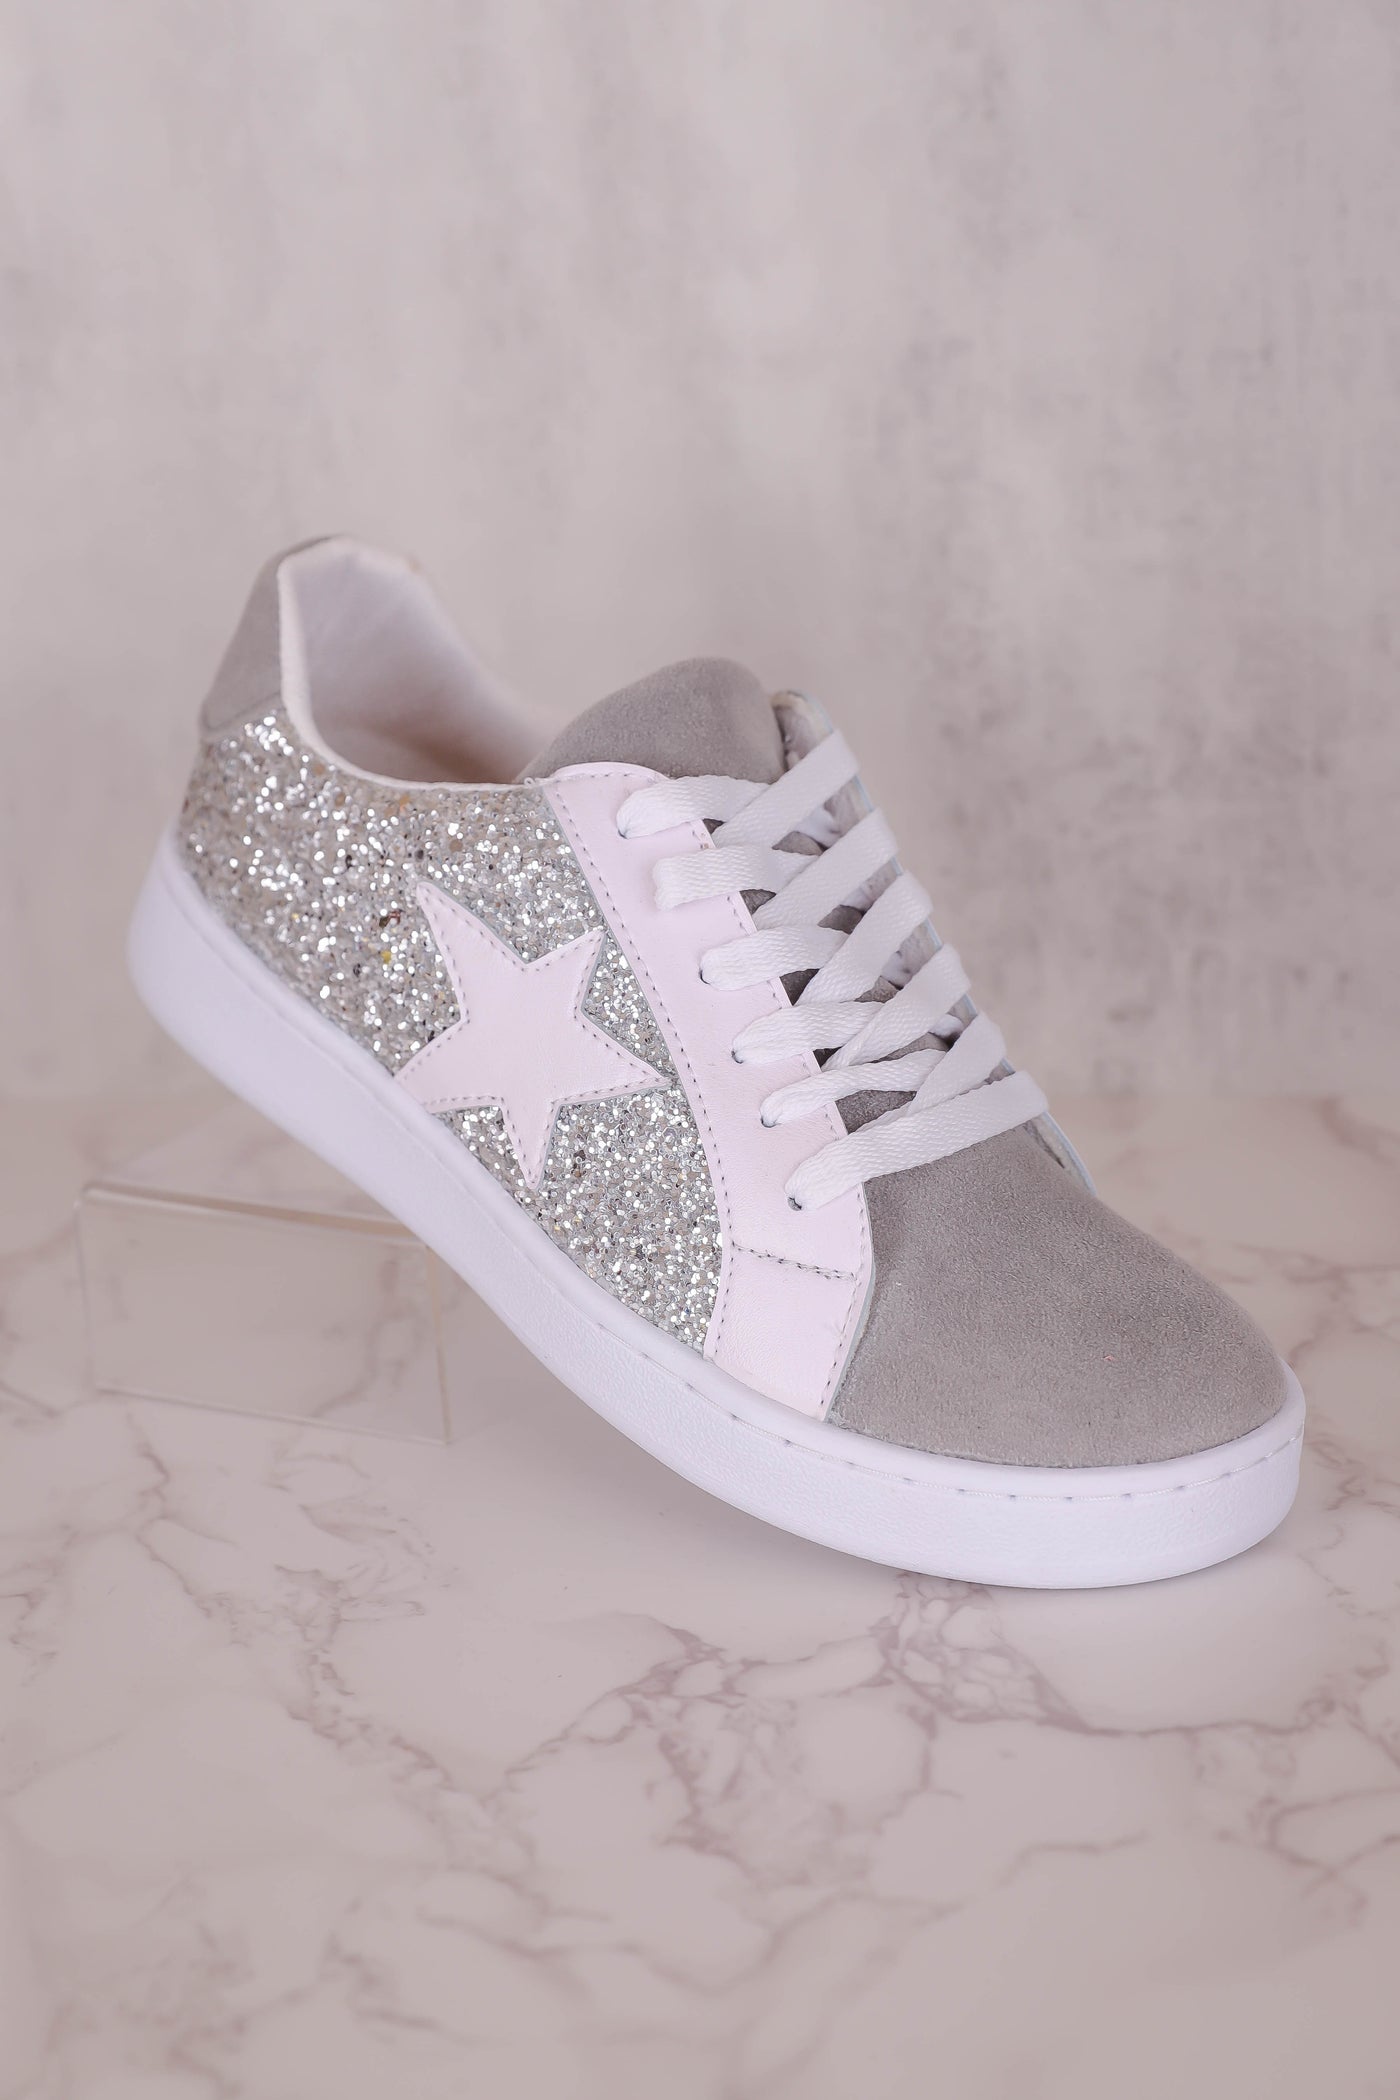 Silver Glitter Sneakers- Women's Star Sneakers- Silver Star Sneakers